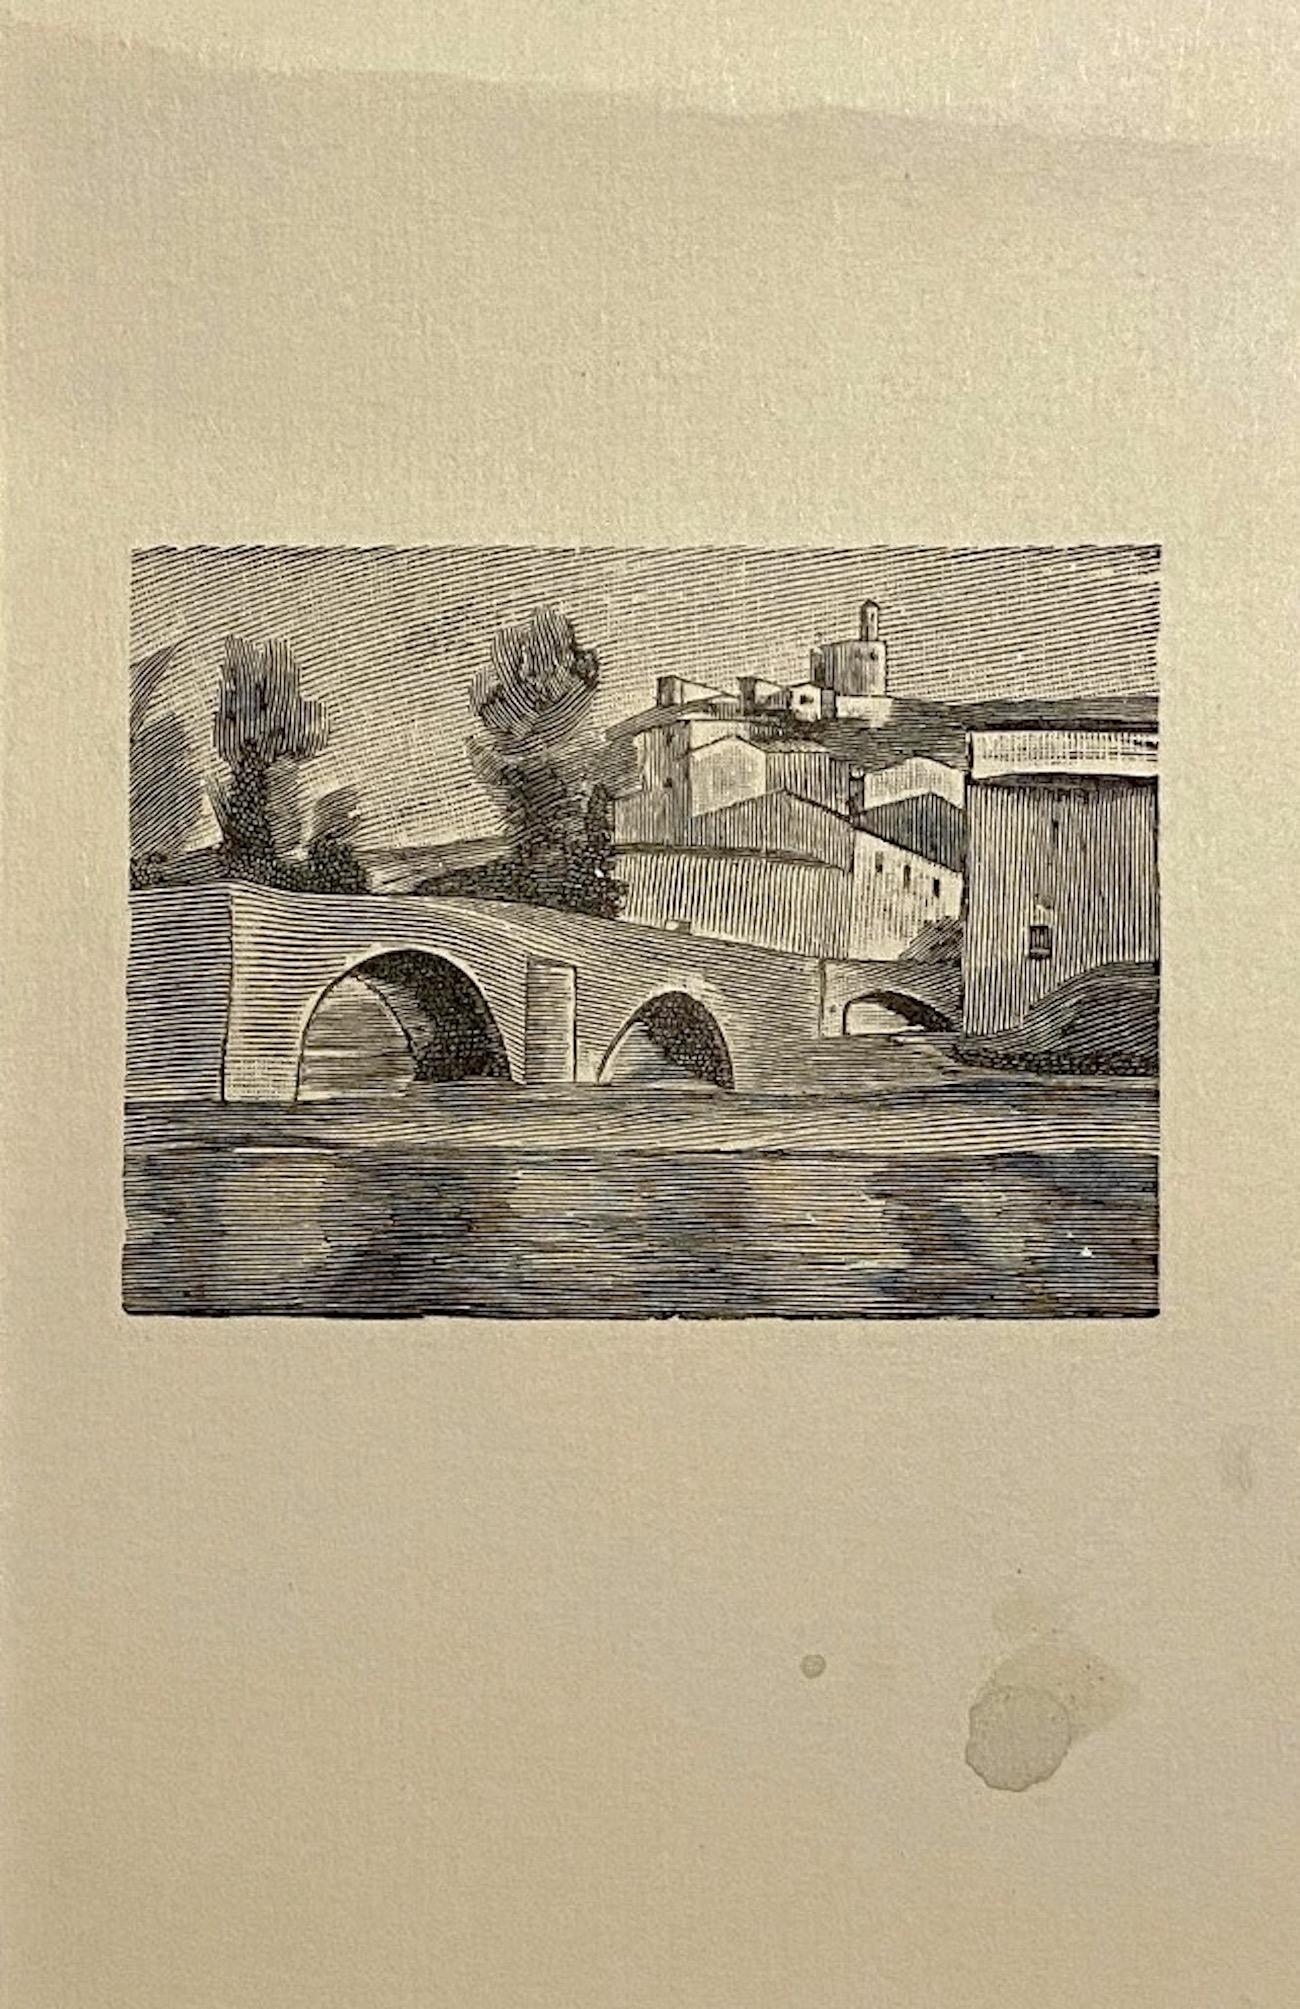 Landscape ist ein originelles modernes Kunstwerk des italienischen Künstlers Mino Maccari (Siena, 1898 - Rom, 1989) aus den 1950er Jahren.

Original-Zinkographie auf Elfenbeinpapier. Bildabmessungen: 16 x 10 cm

Ausgezeichnete Bedingungen.